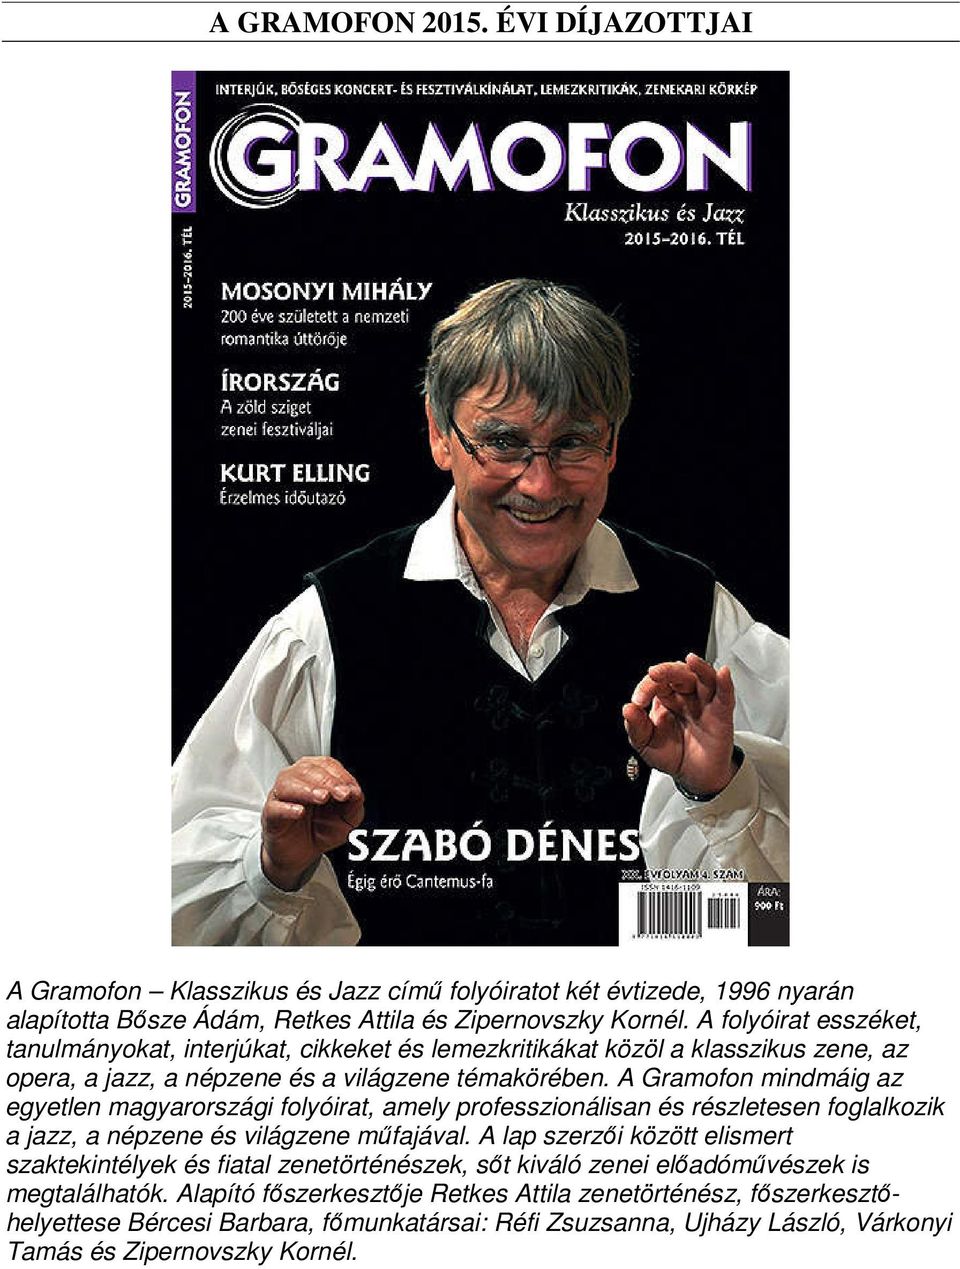 A Gramofon mindmáig az egyetlen magyarországi folyóirat, amely professzionálisan és részletesen foglalkozik a jazz, a népzene és világzene műfajával.